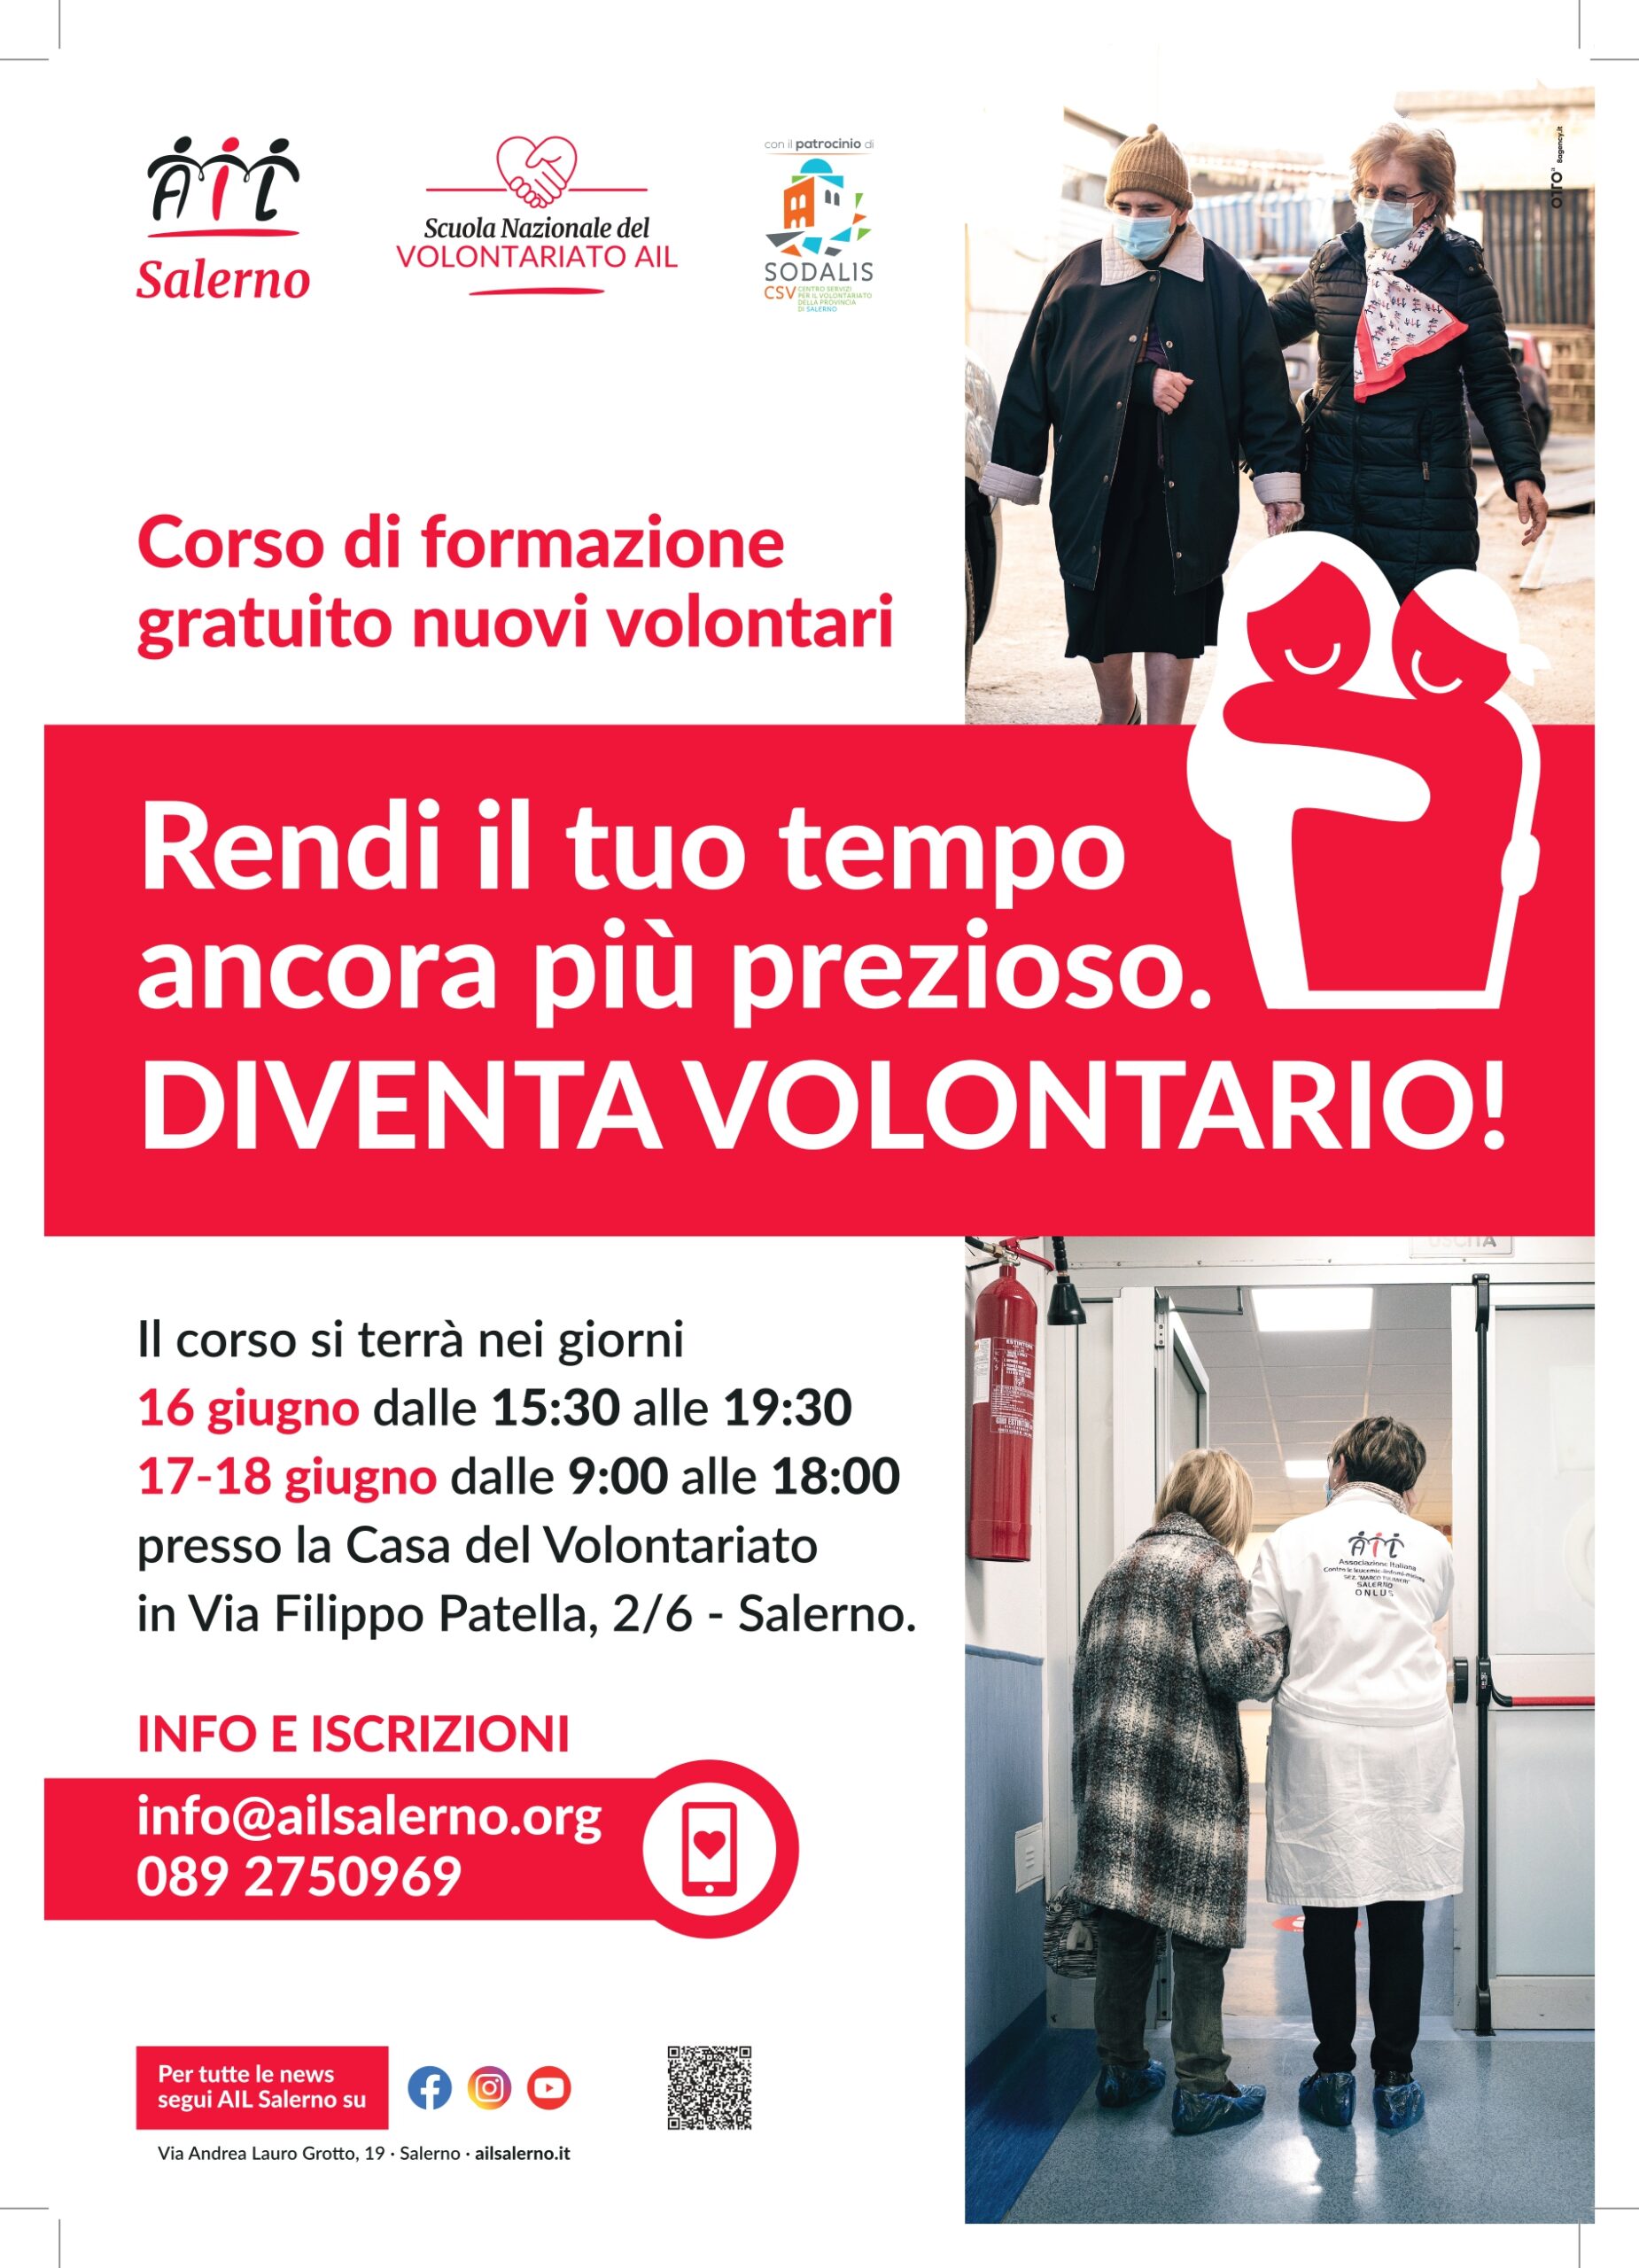 Salerno: Ail, Corso gratuito di formazione per nuovi volontari